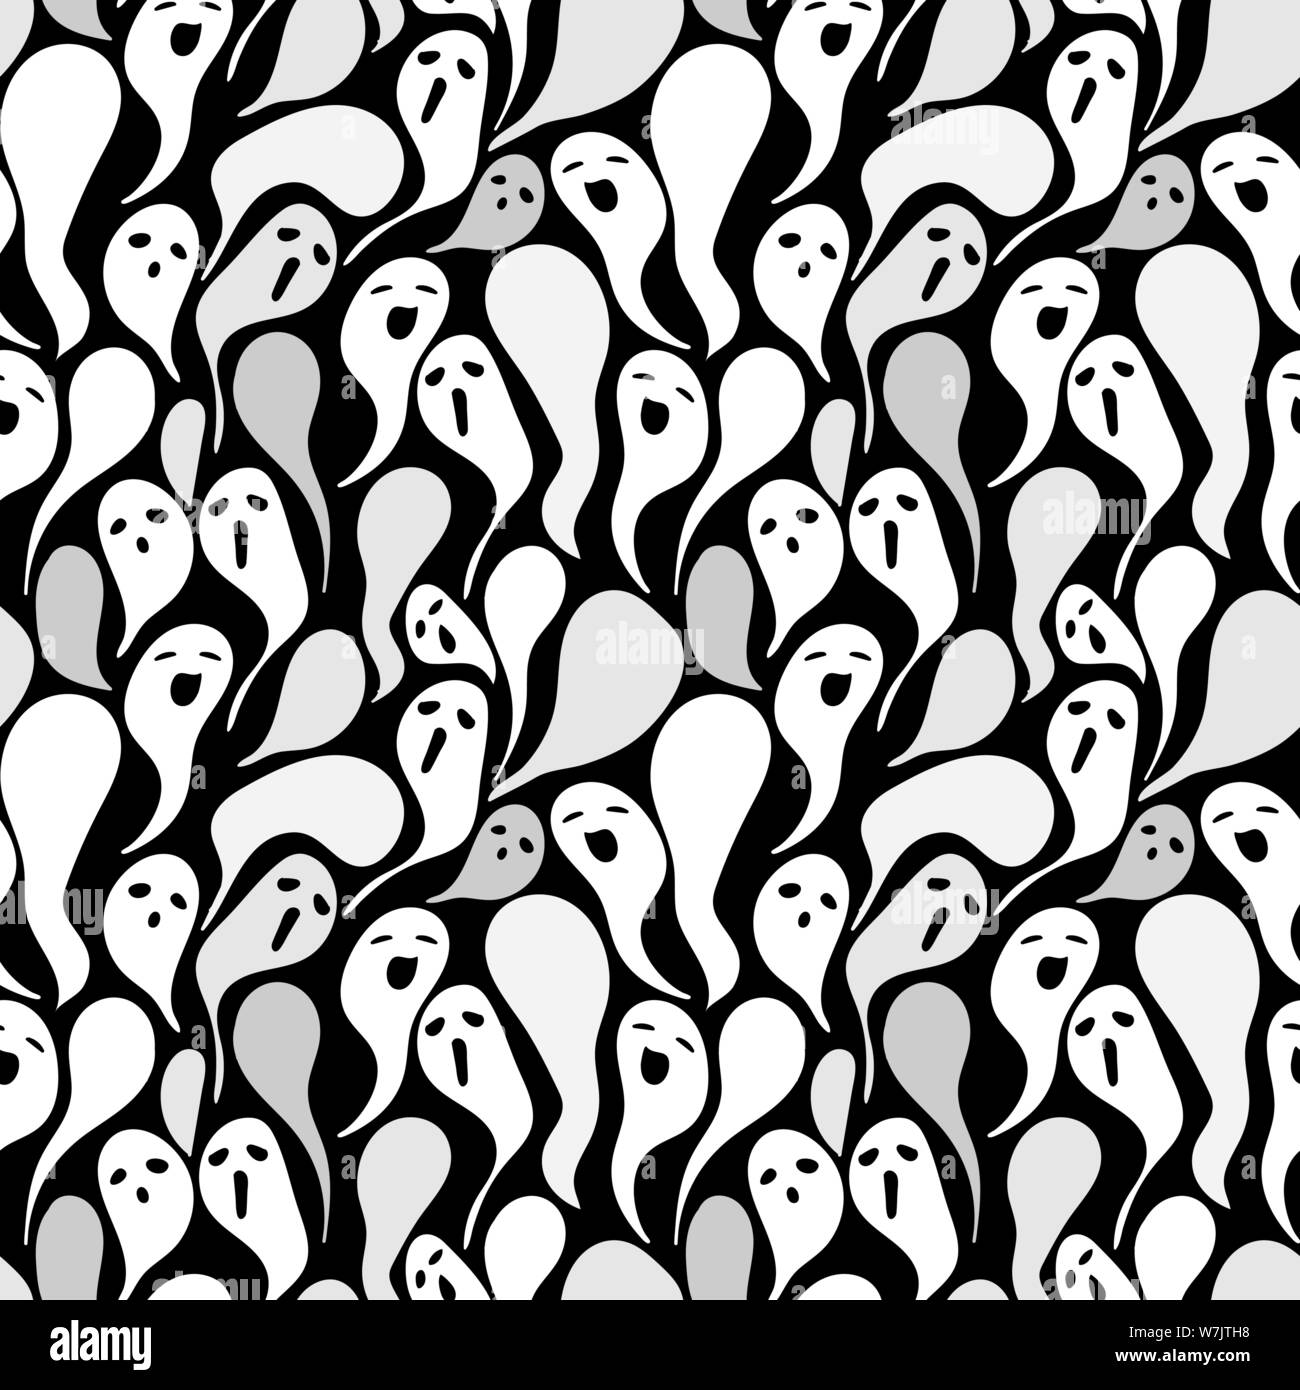 Die nahtlose Vektor halloween Muster mit Spooky ghost Silhouetten auf schwarzem Hintergrund Stock Vektor